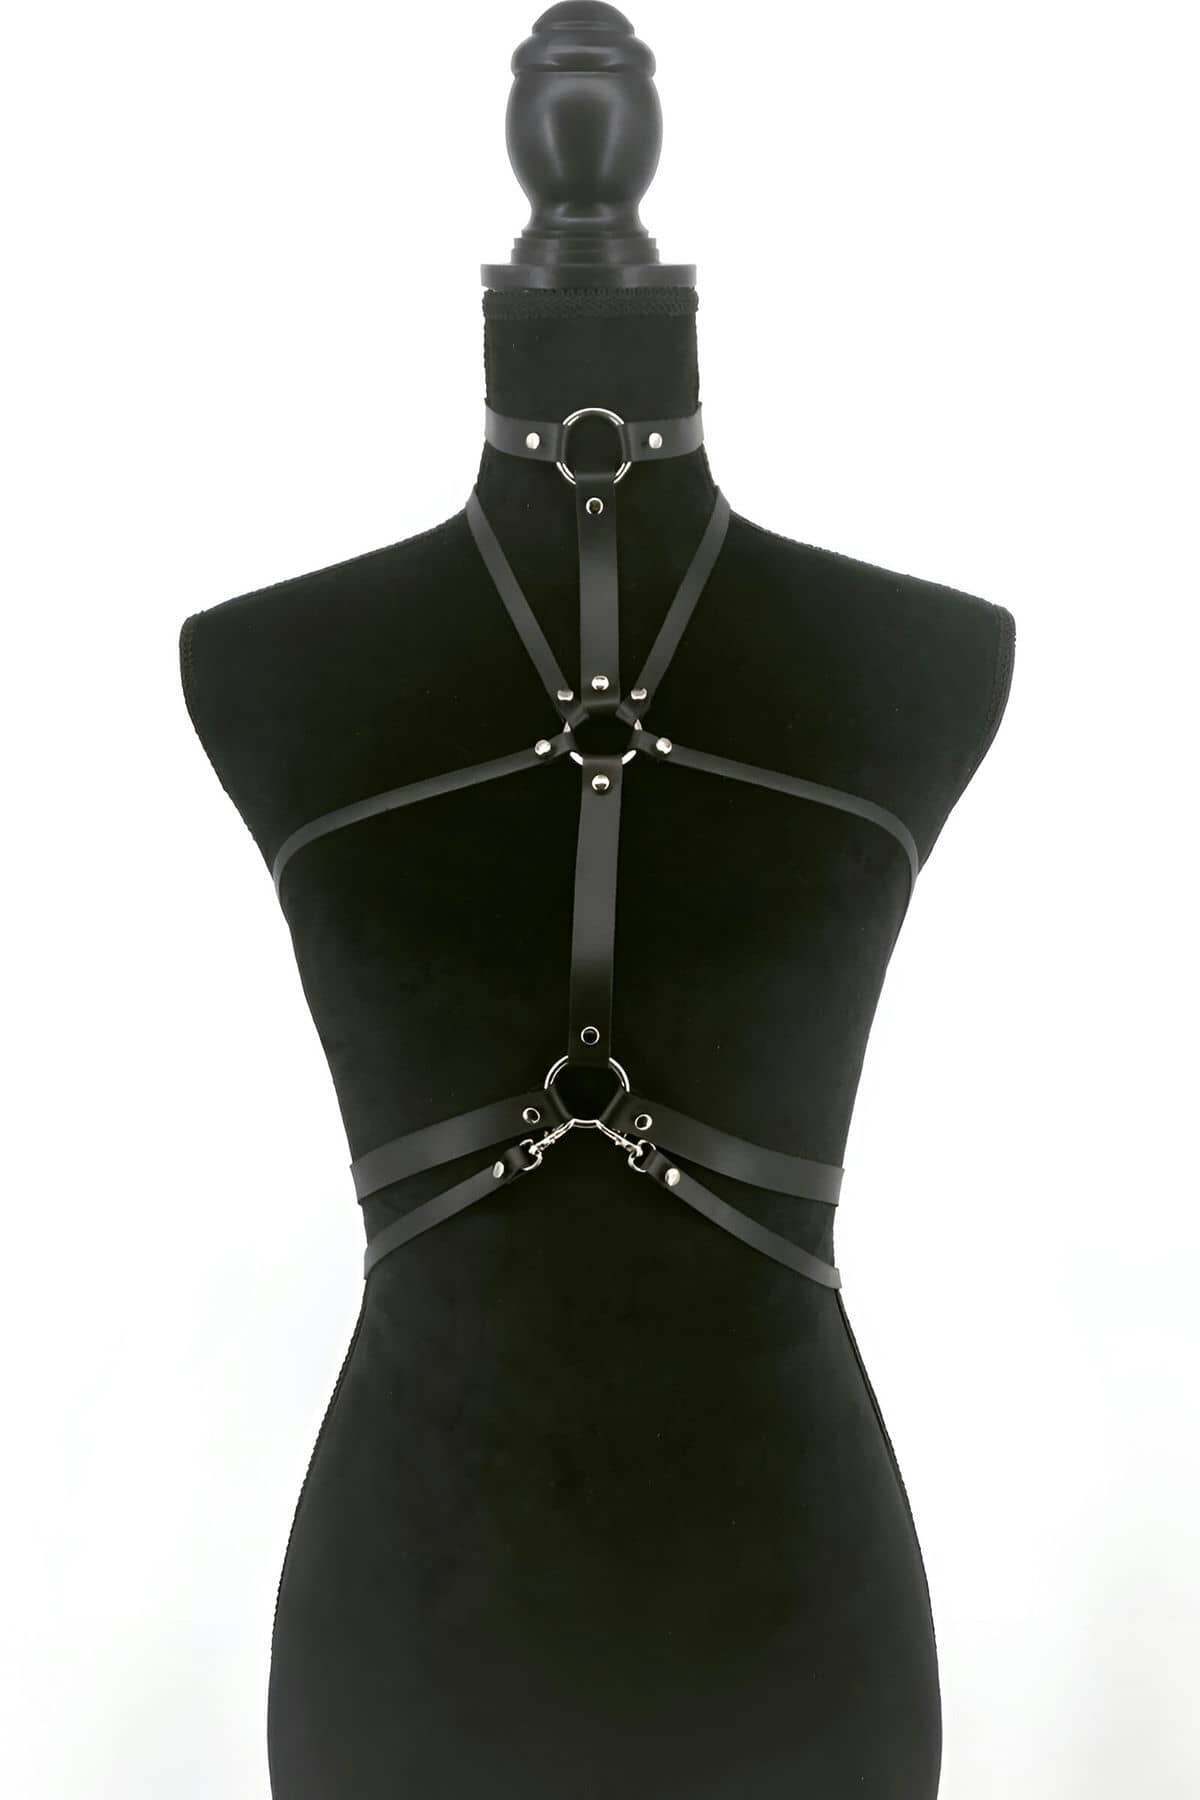 CLZ41 Deri Fantazi İç GiyimBondage Harness - Ürün Rengi:Siyah